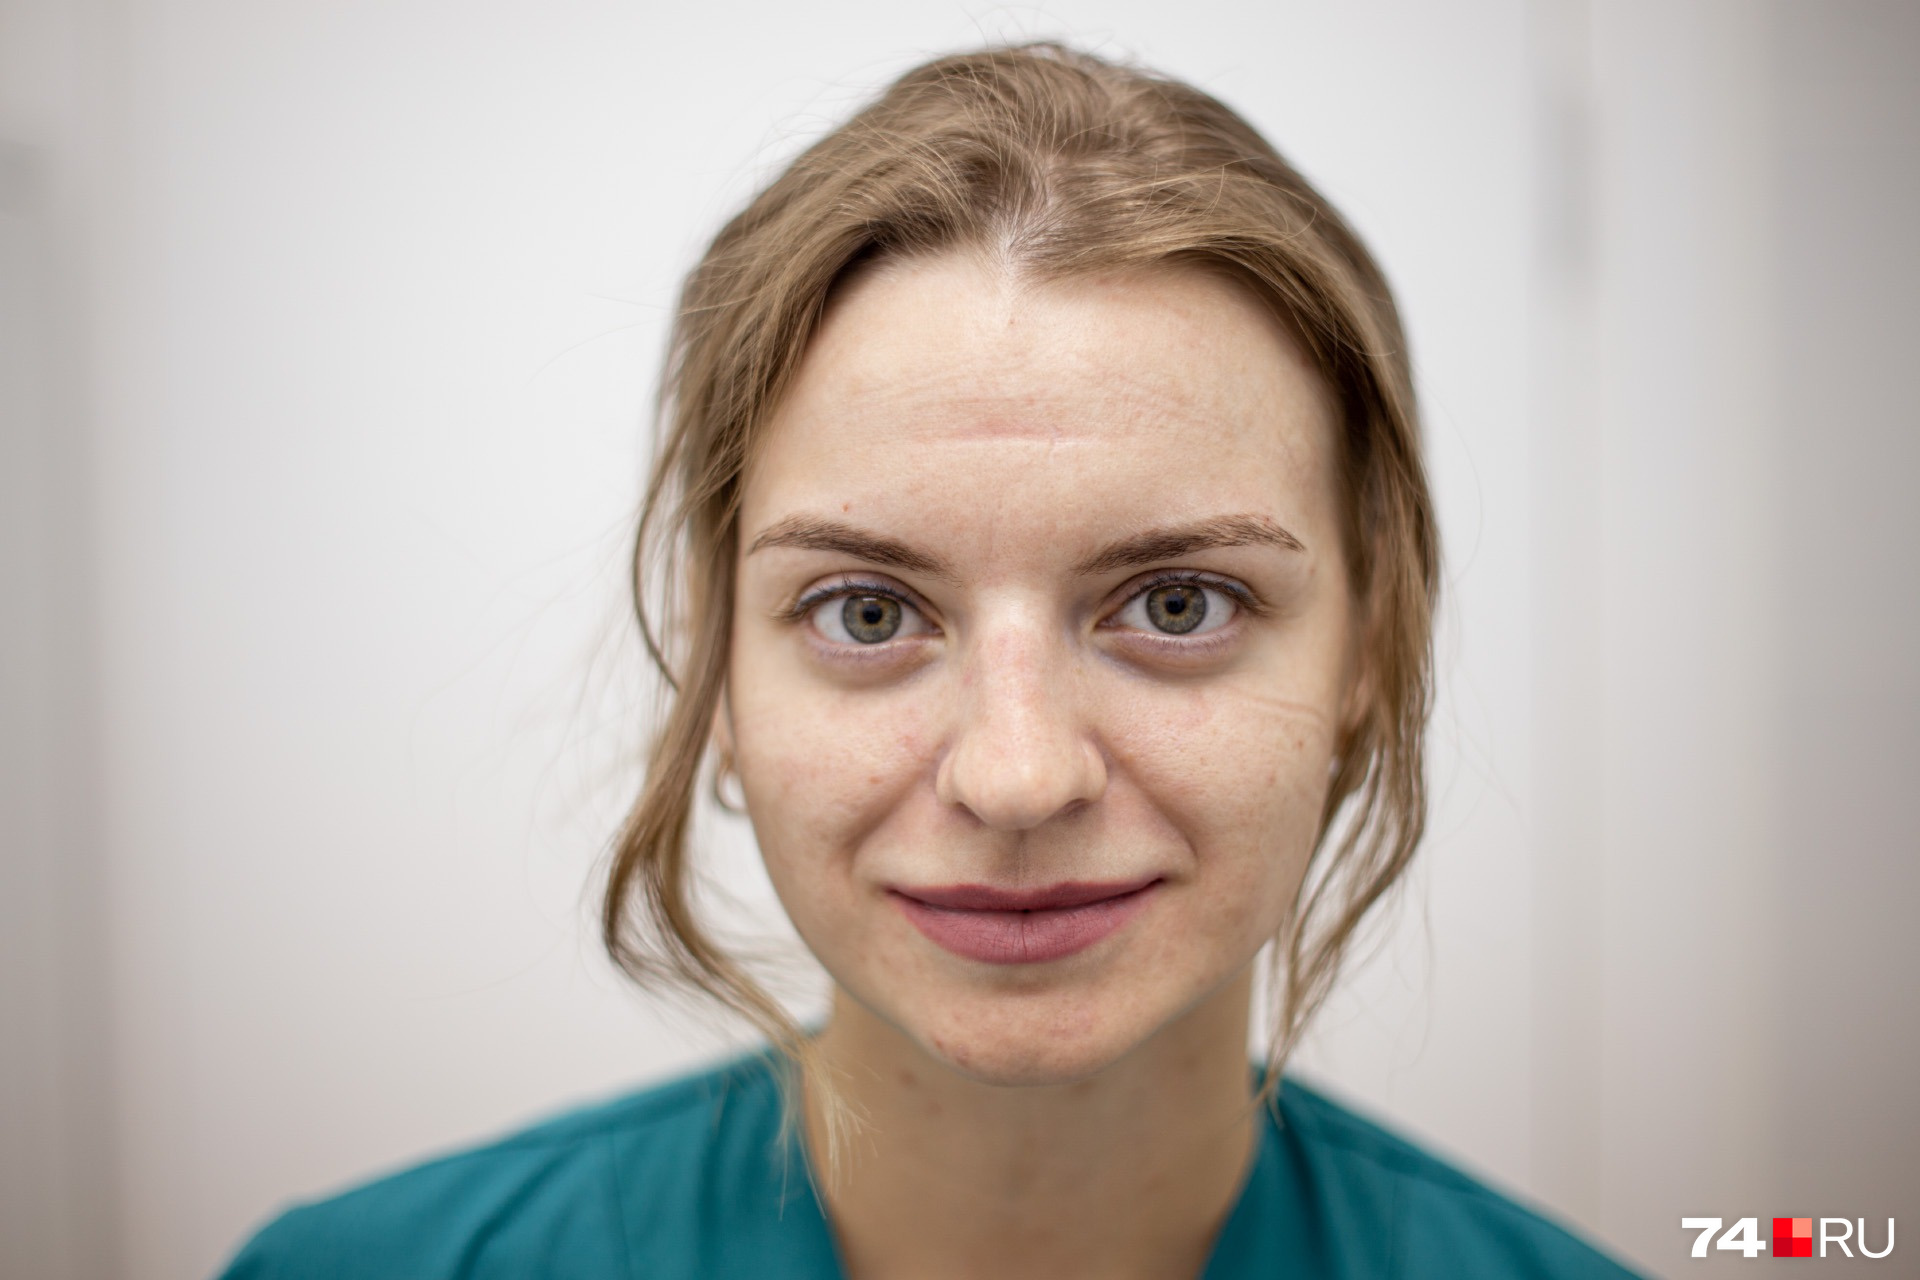 Юлия Лукьянова, младшая медицинская сестра. Сутки в «красной зоне» девушка сравнивает с самой интенсивной тренировкой по фитнесу. Кстати, похудела уже на несколько килограммов